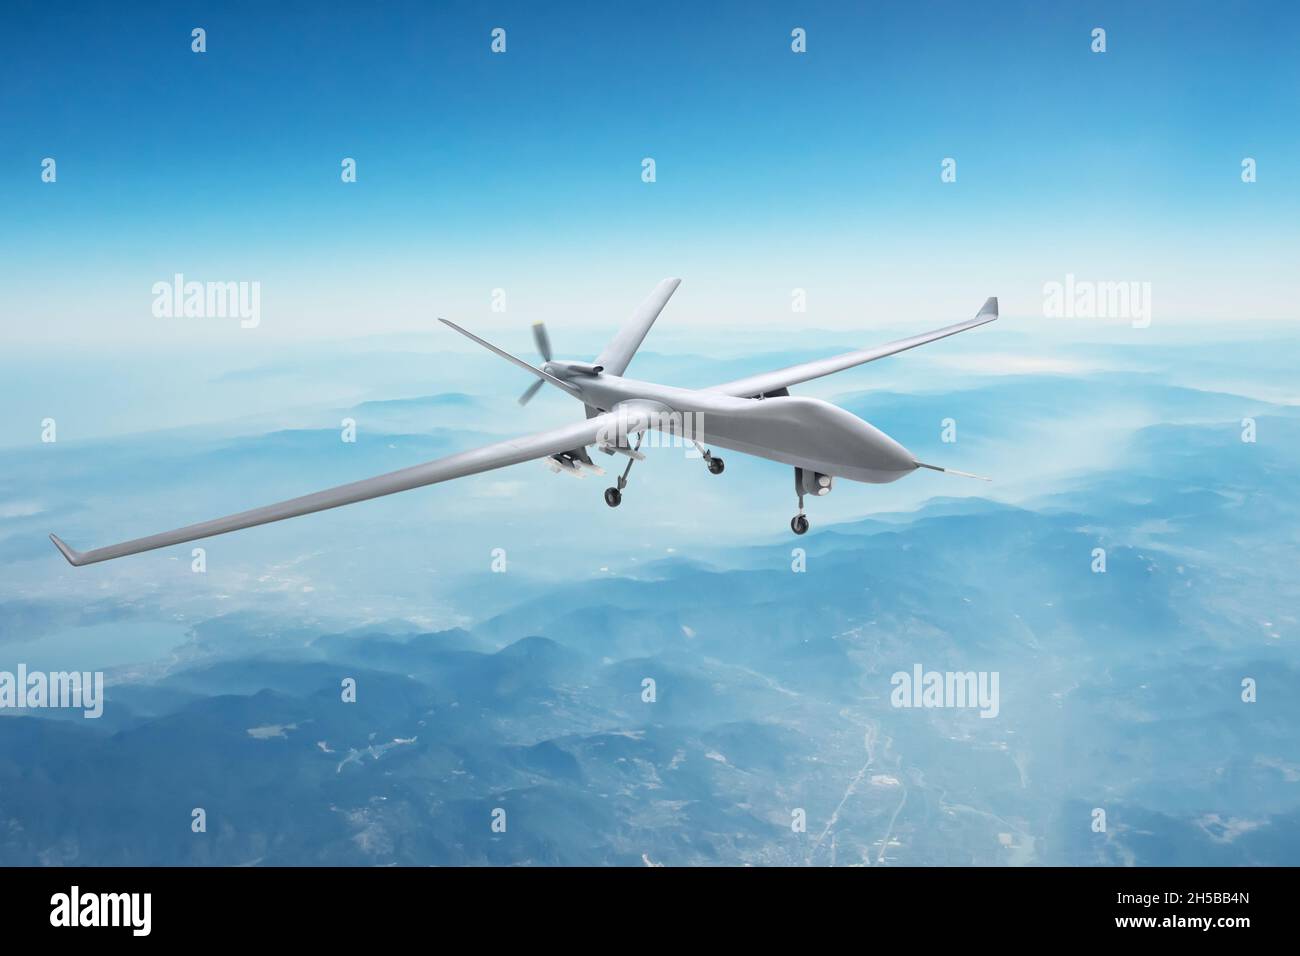 Un drone militaire d’espionnage sans pilote survole les montagnes à l’heure du jour Banque D'Images